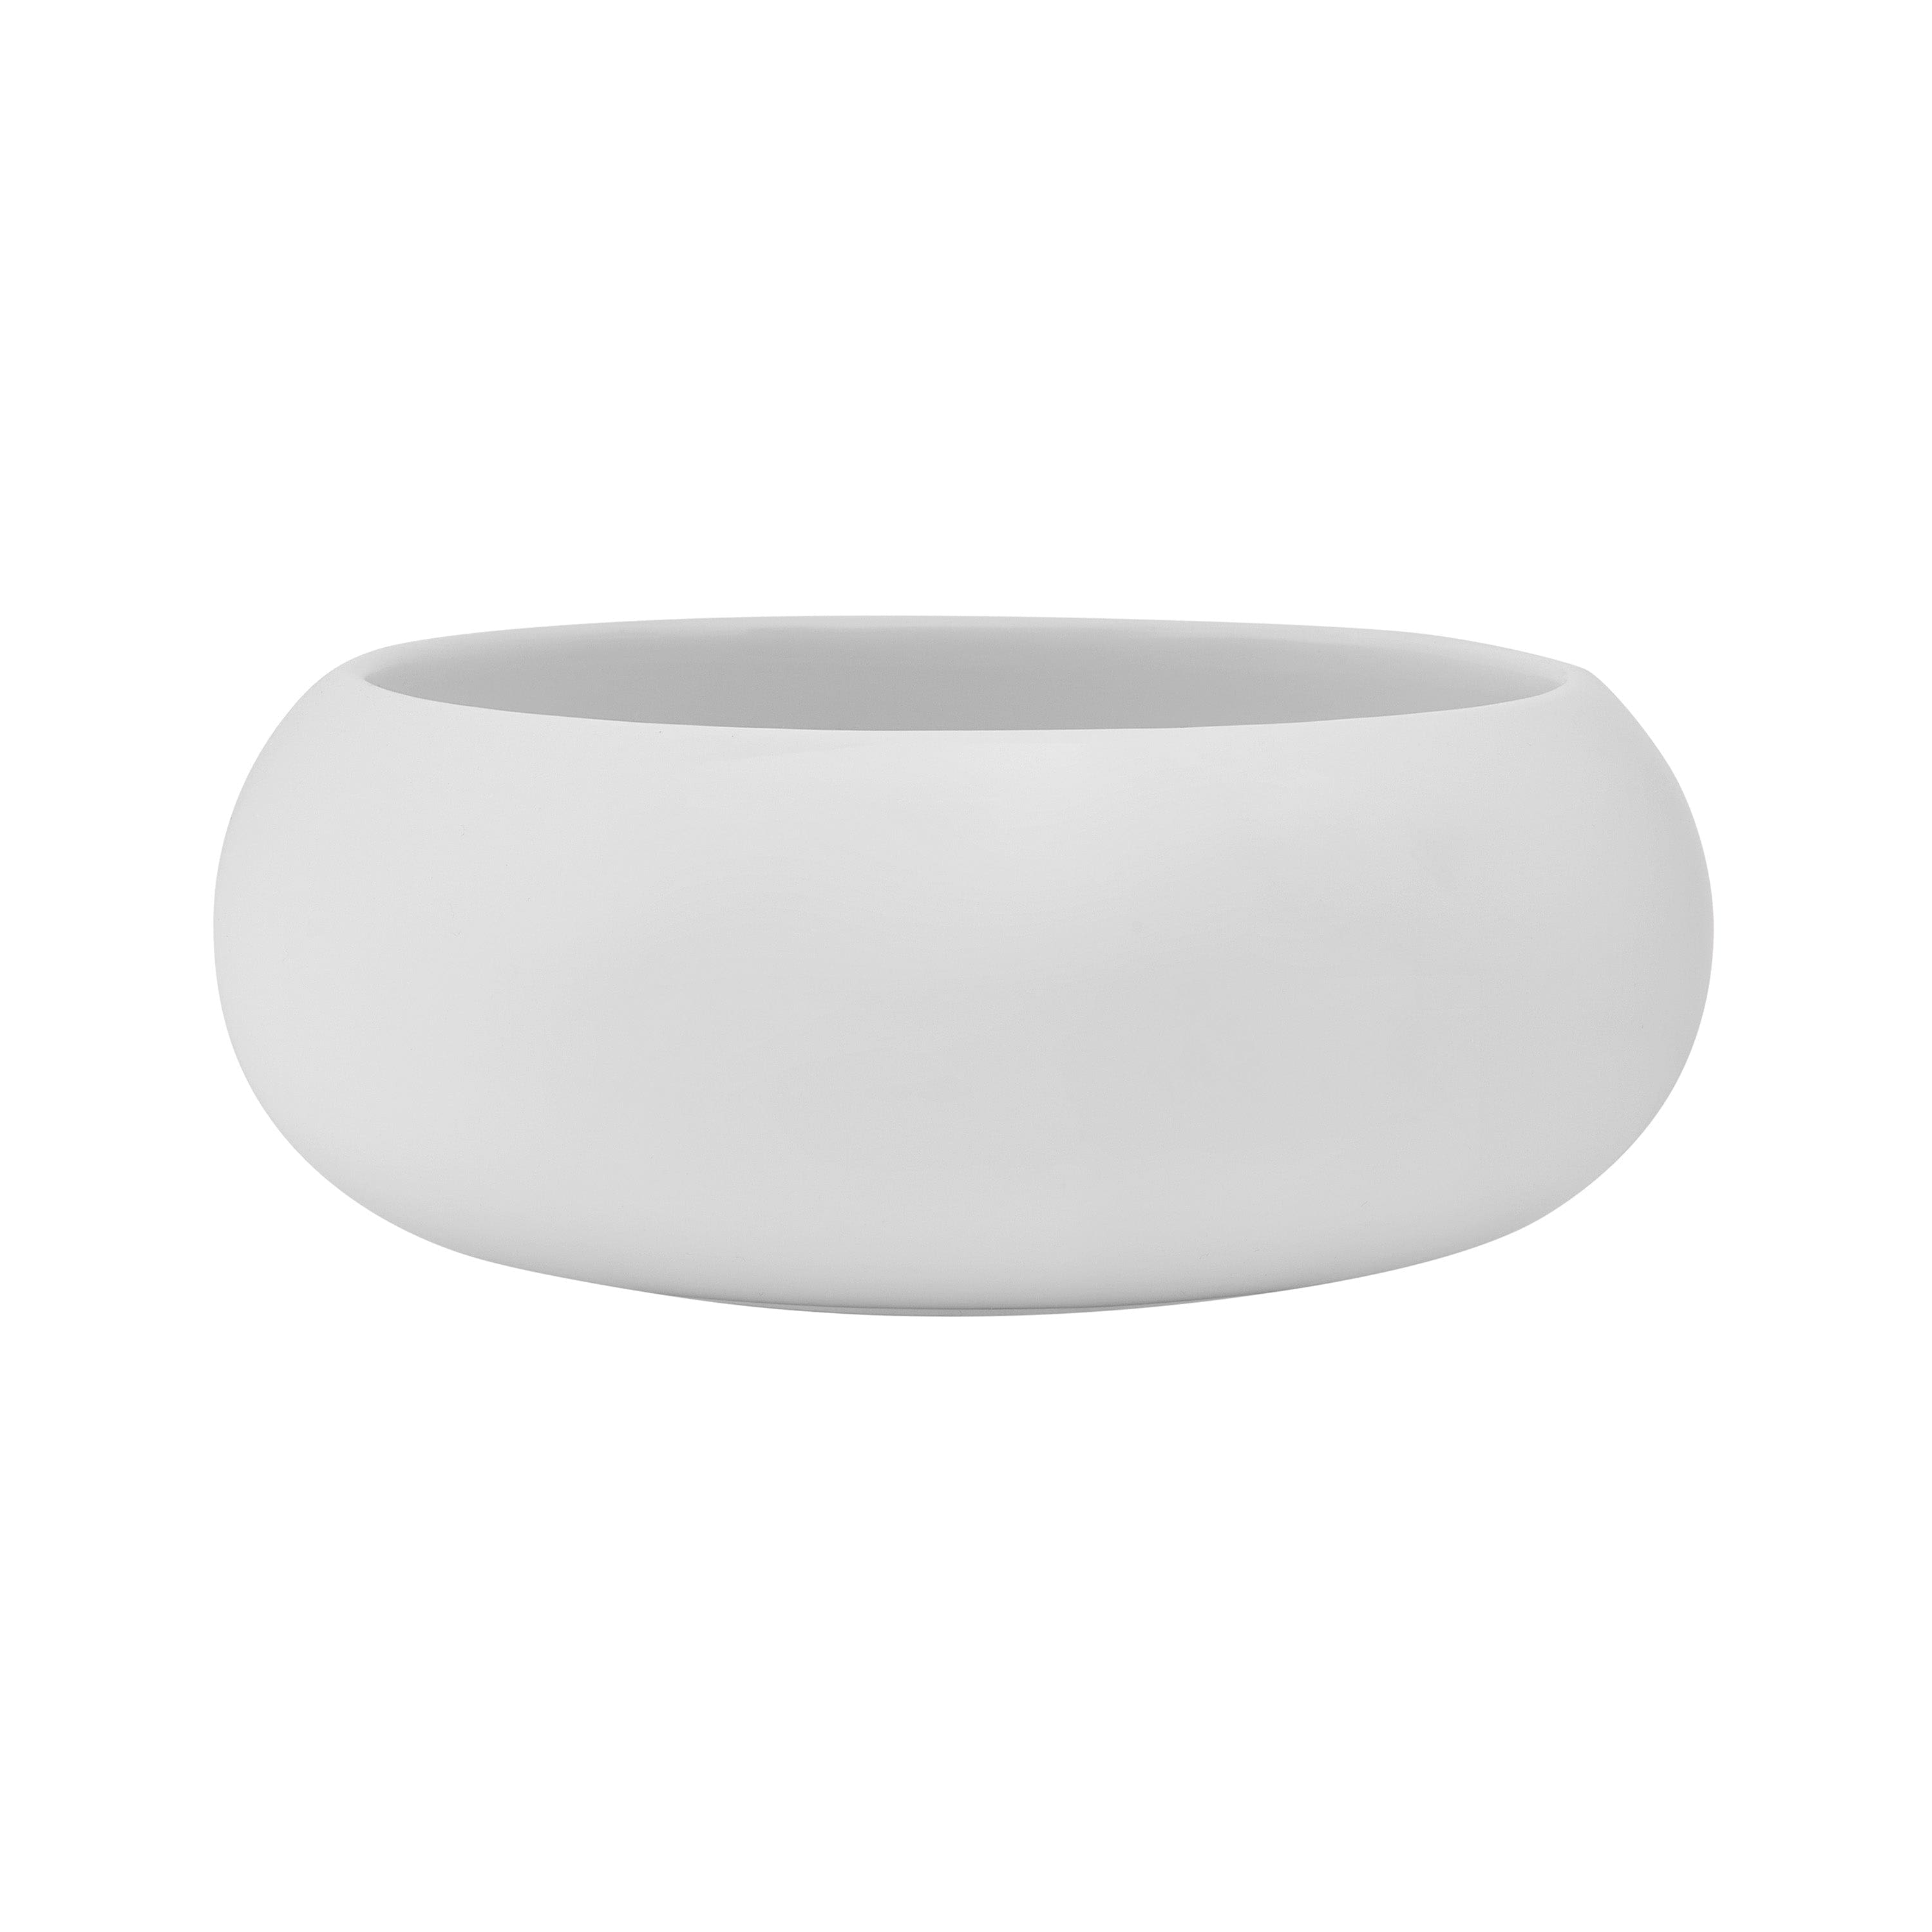 Specials Porcelain Bowl 5" / 12oz White